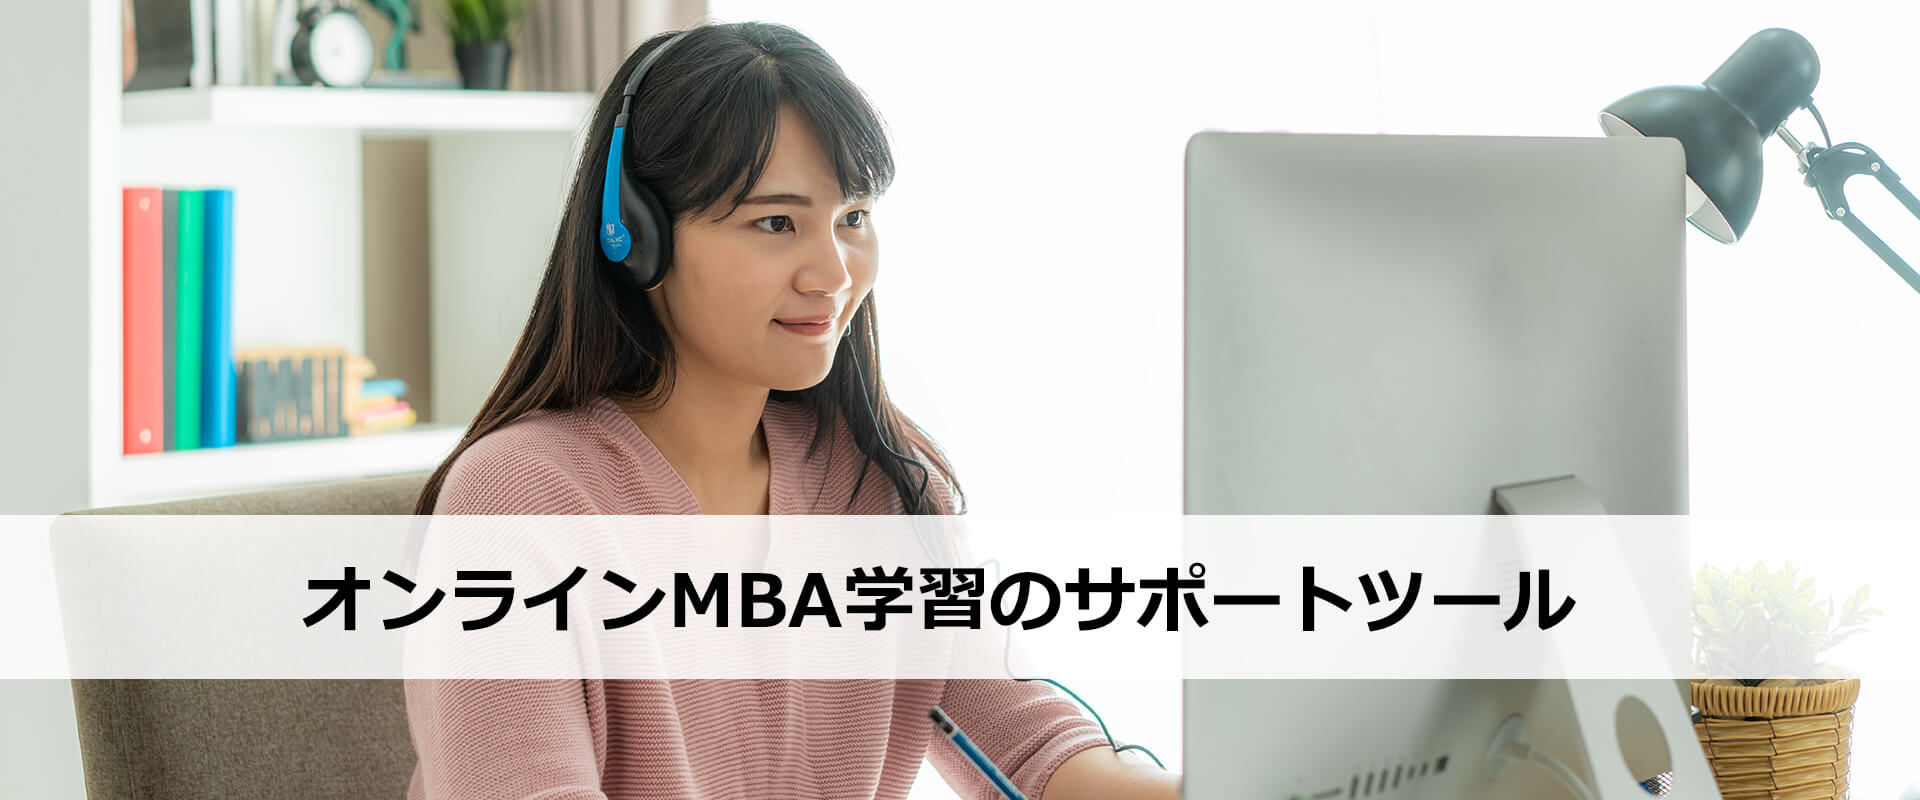 オンラインMBA学習のサポートツール